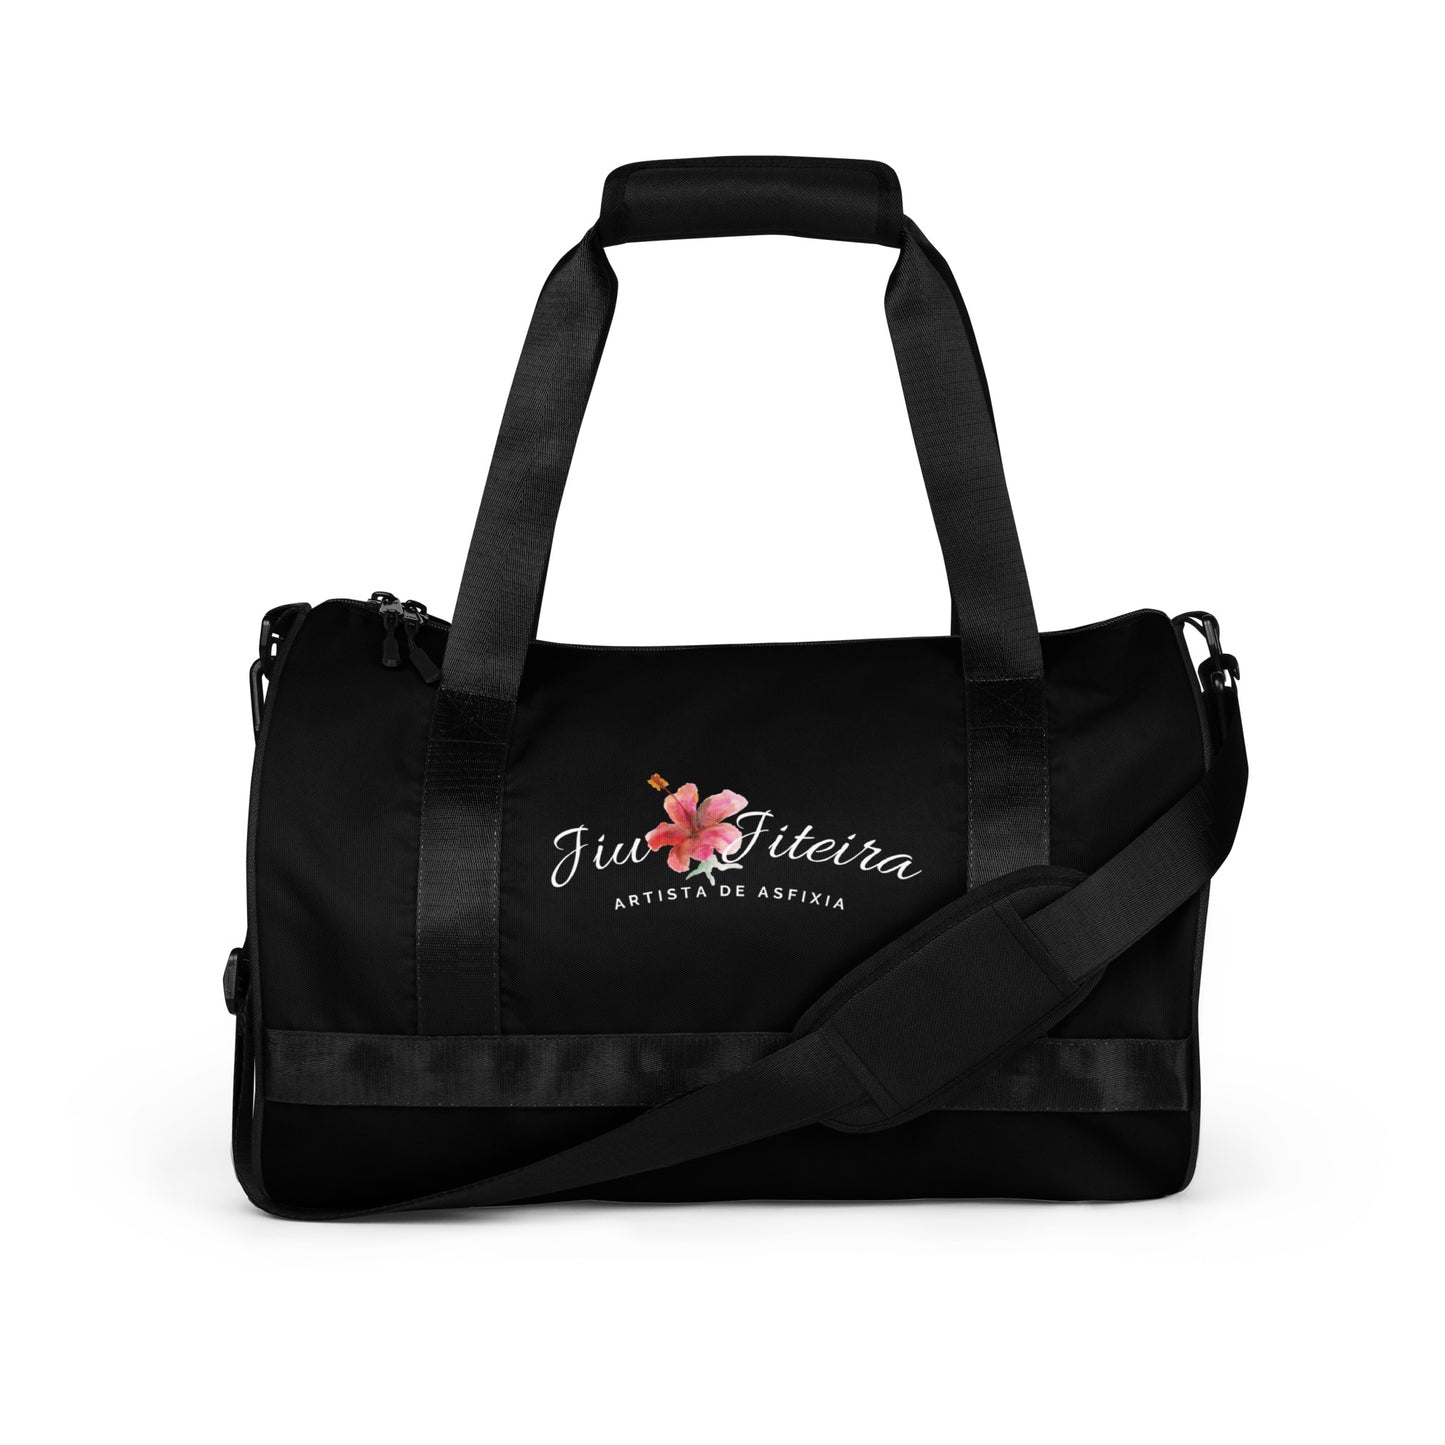 Duffle bag- Jiujiteira Gym Bag the Women of Jiujitsu - The Women of Jiujitsu